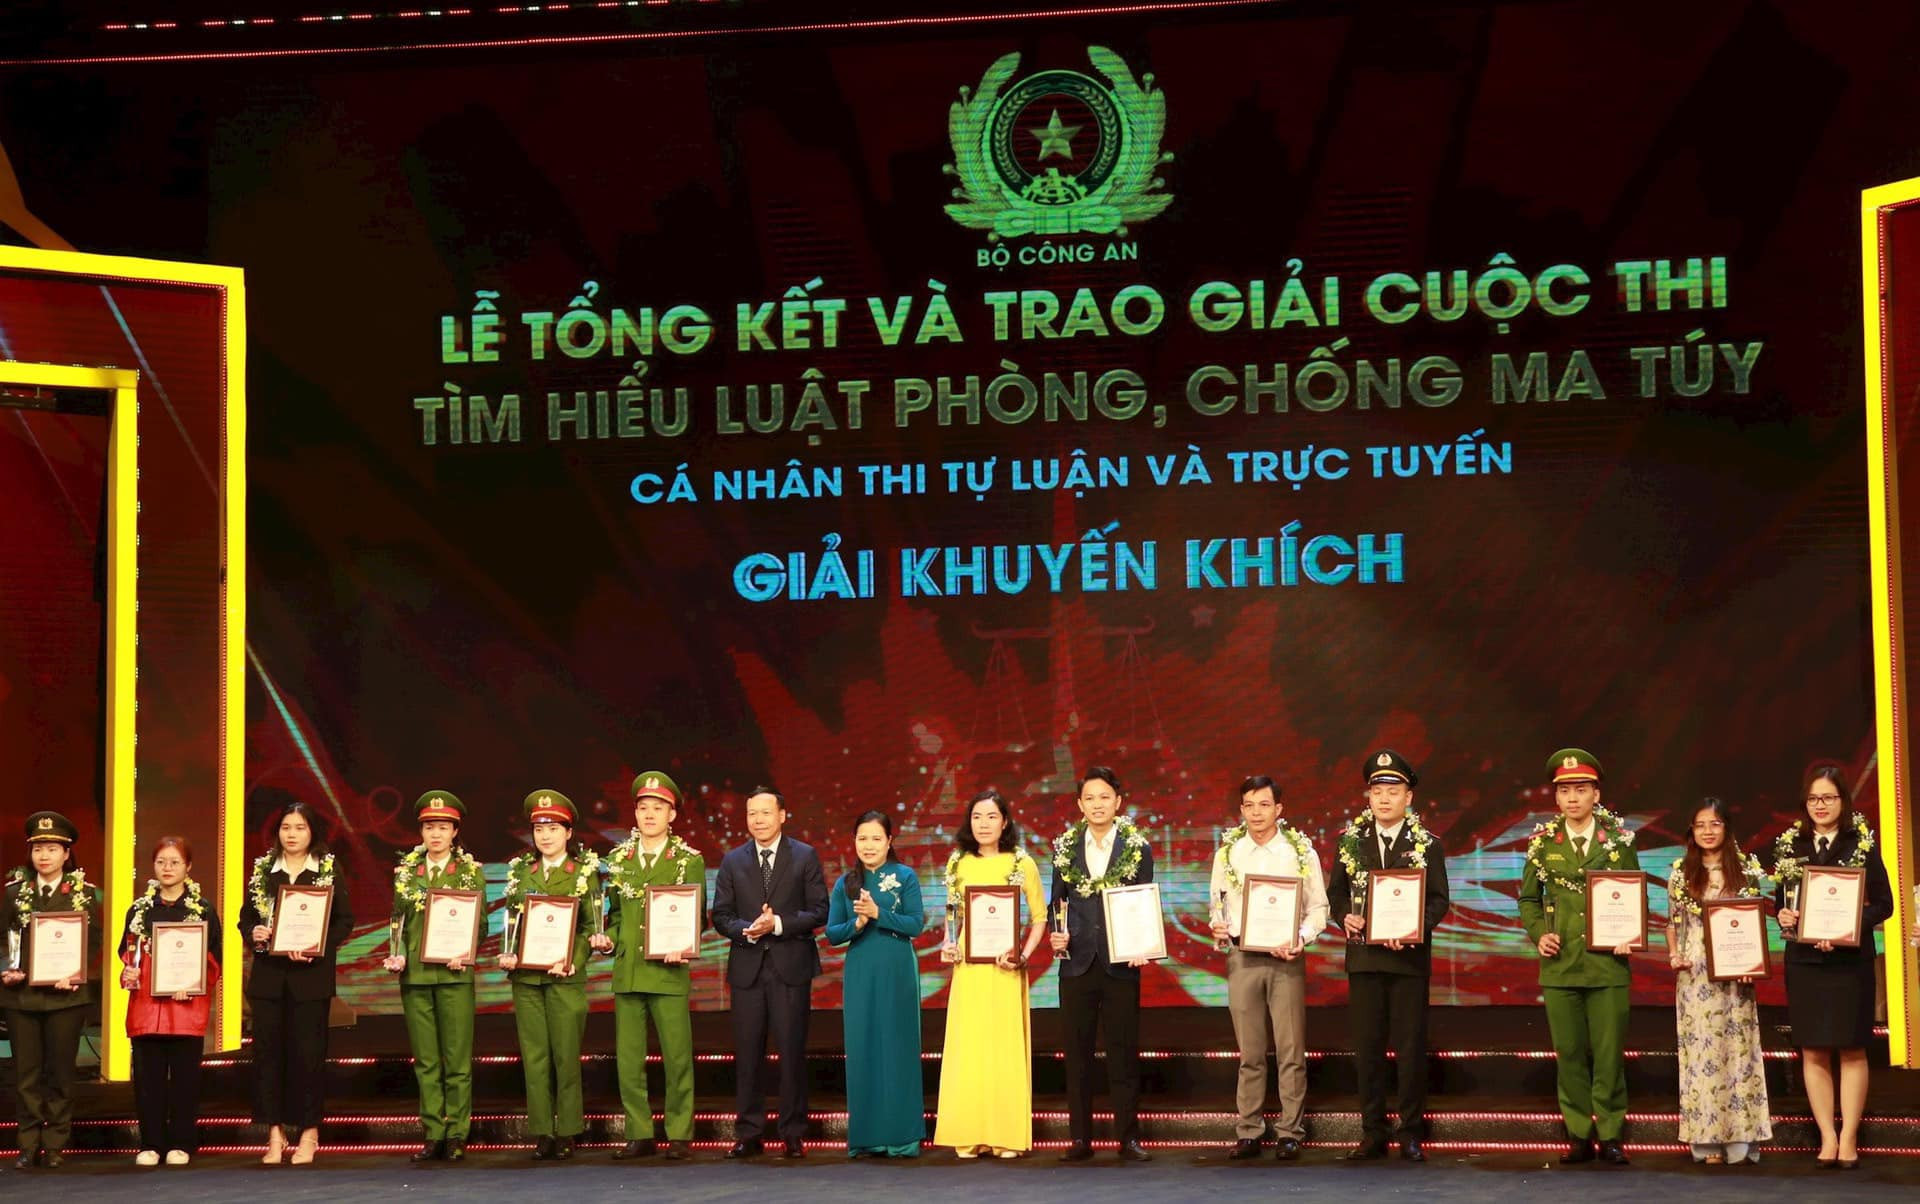 Bộ Công an đã tổng kết và trao giải cuộc thi 